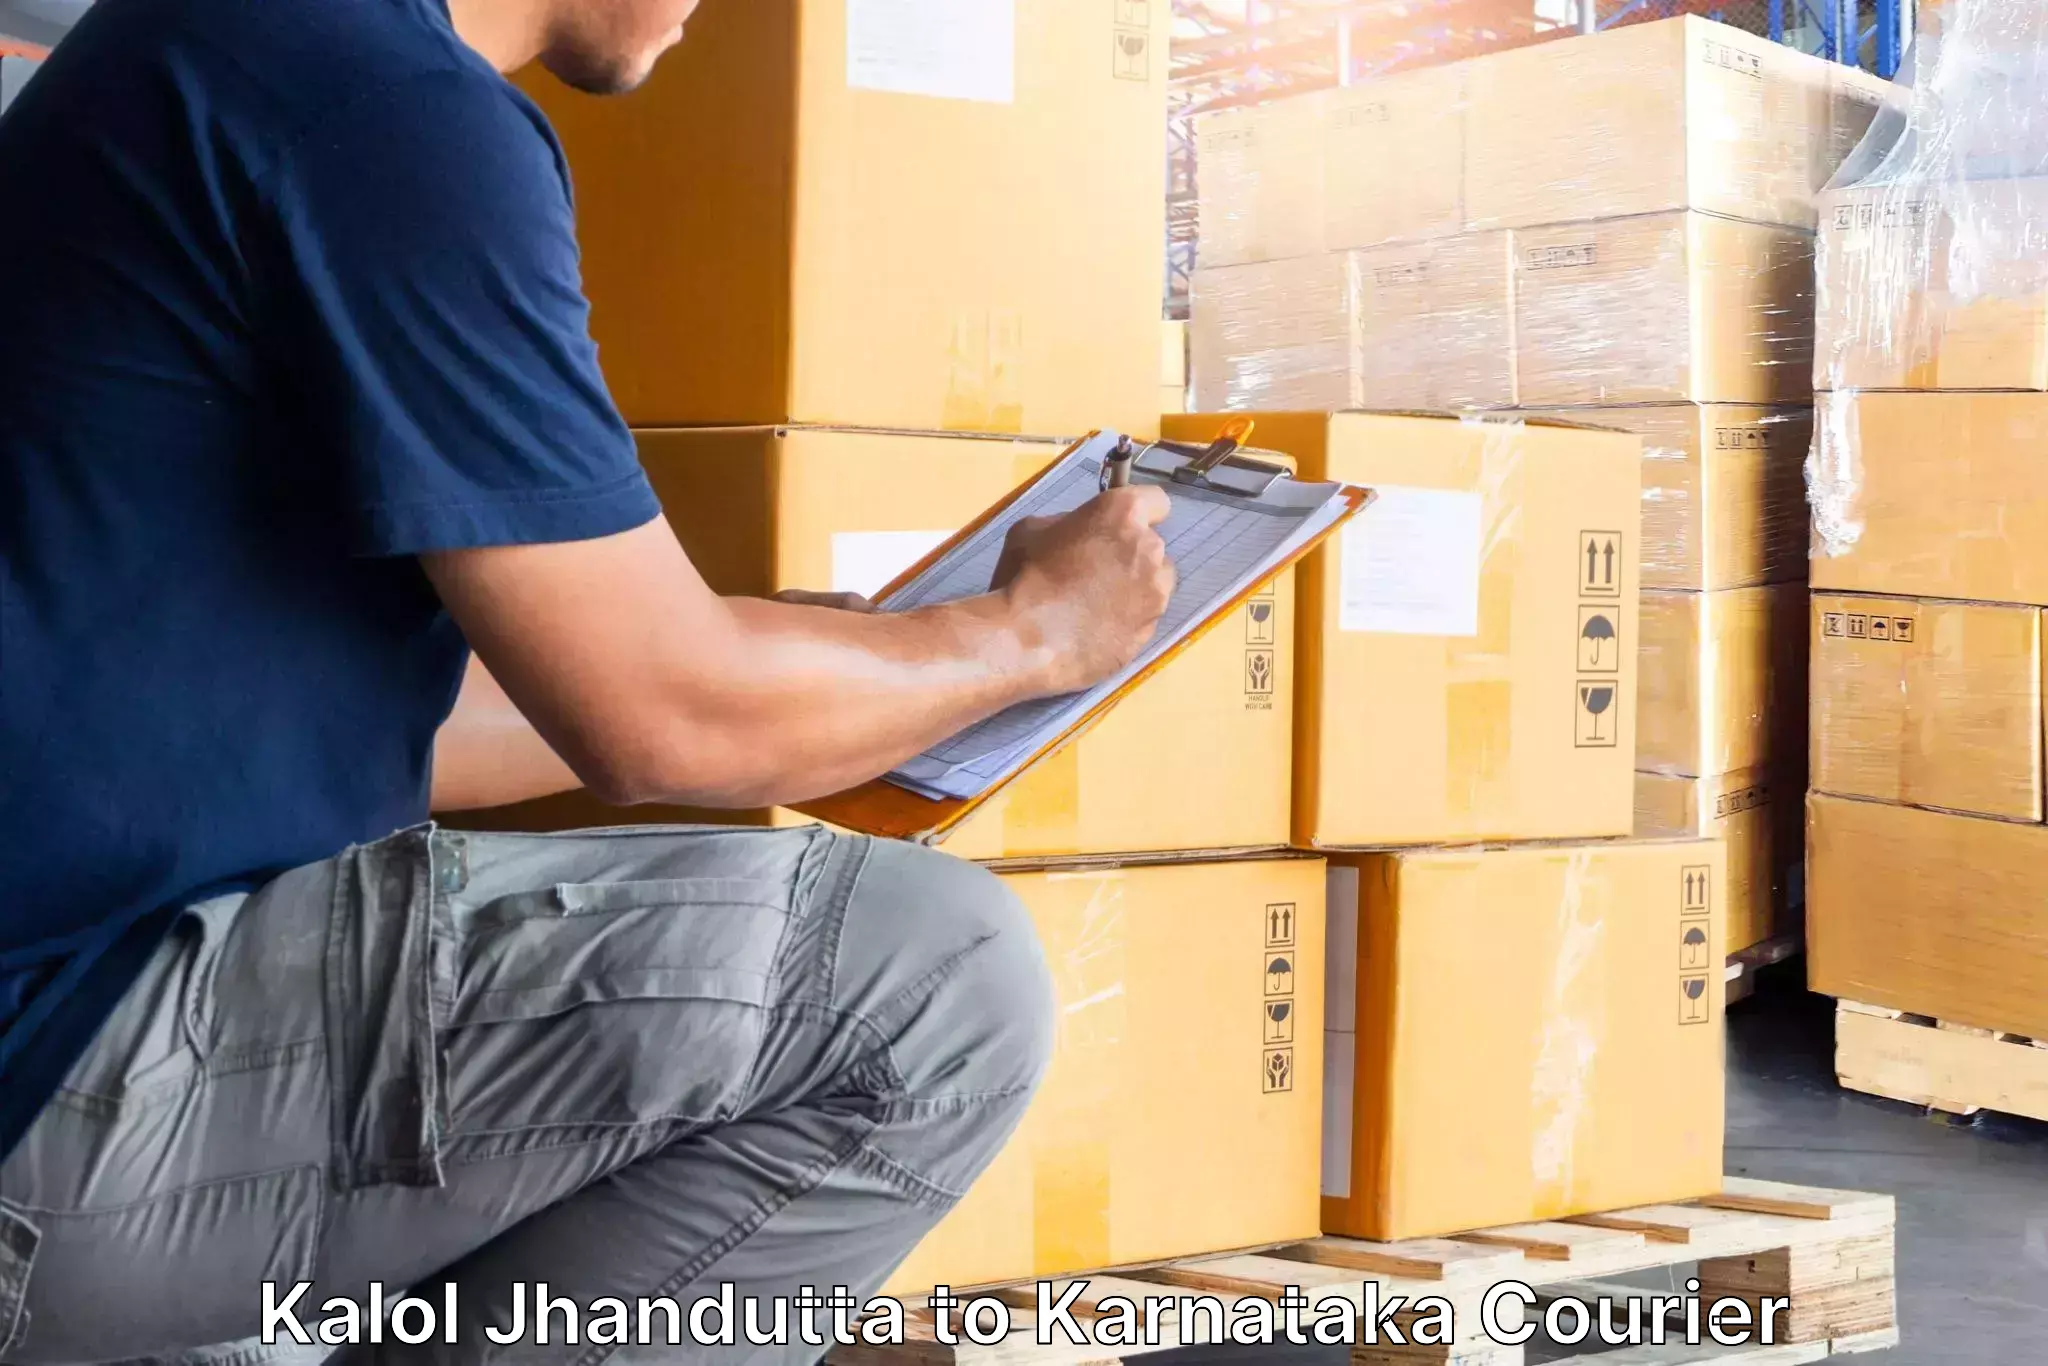 Household goods movers and packers Kalol Jhandutta to Karnataka